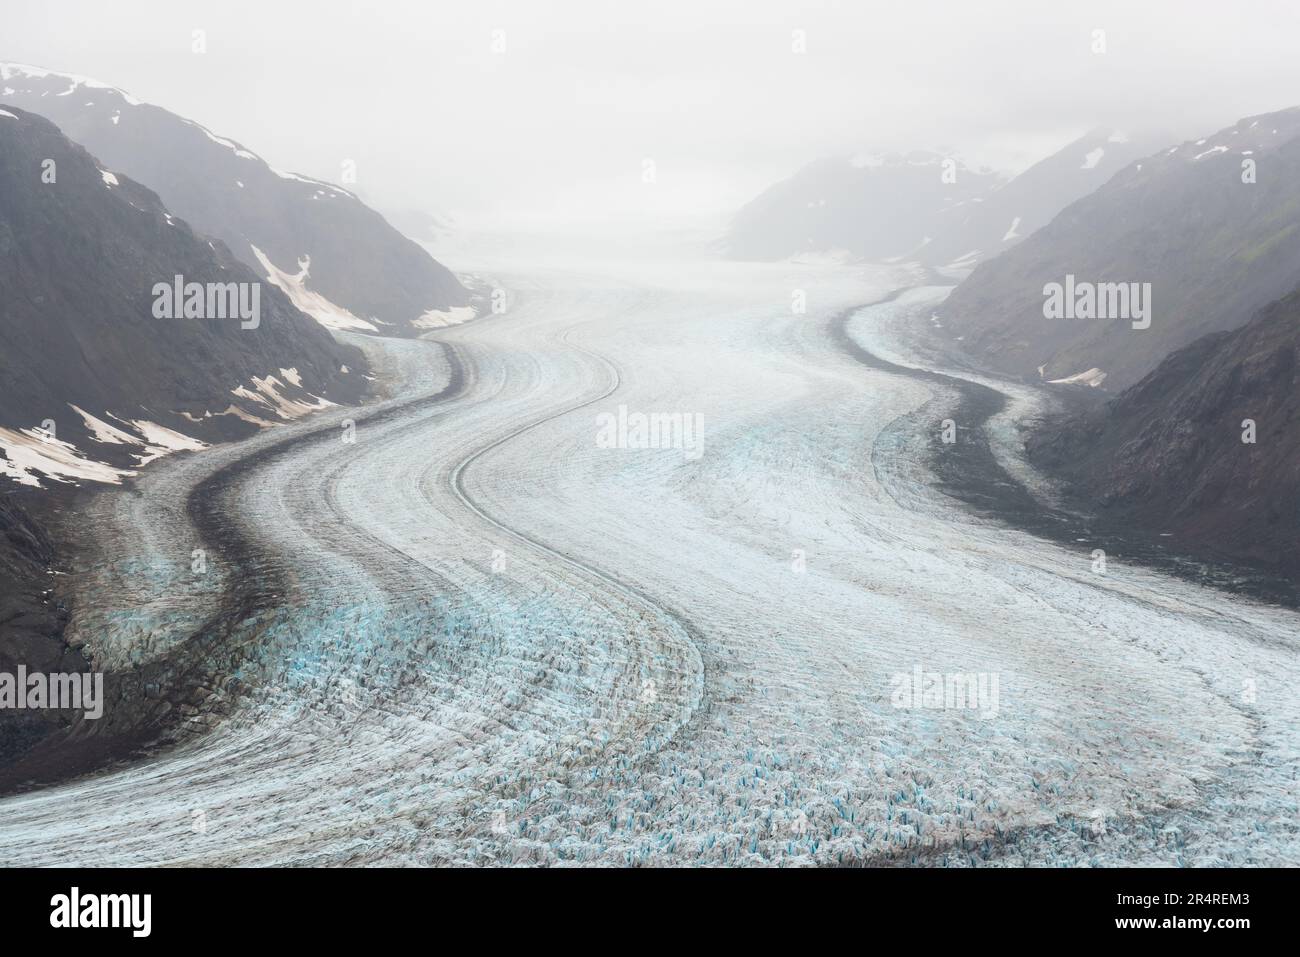 Salmon glacier in the fog, British Columbia, Canada. Stock Photo